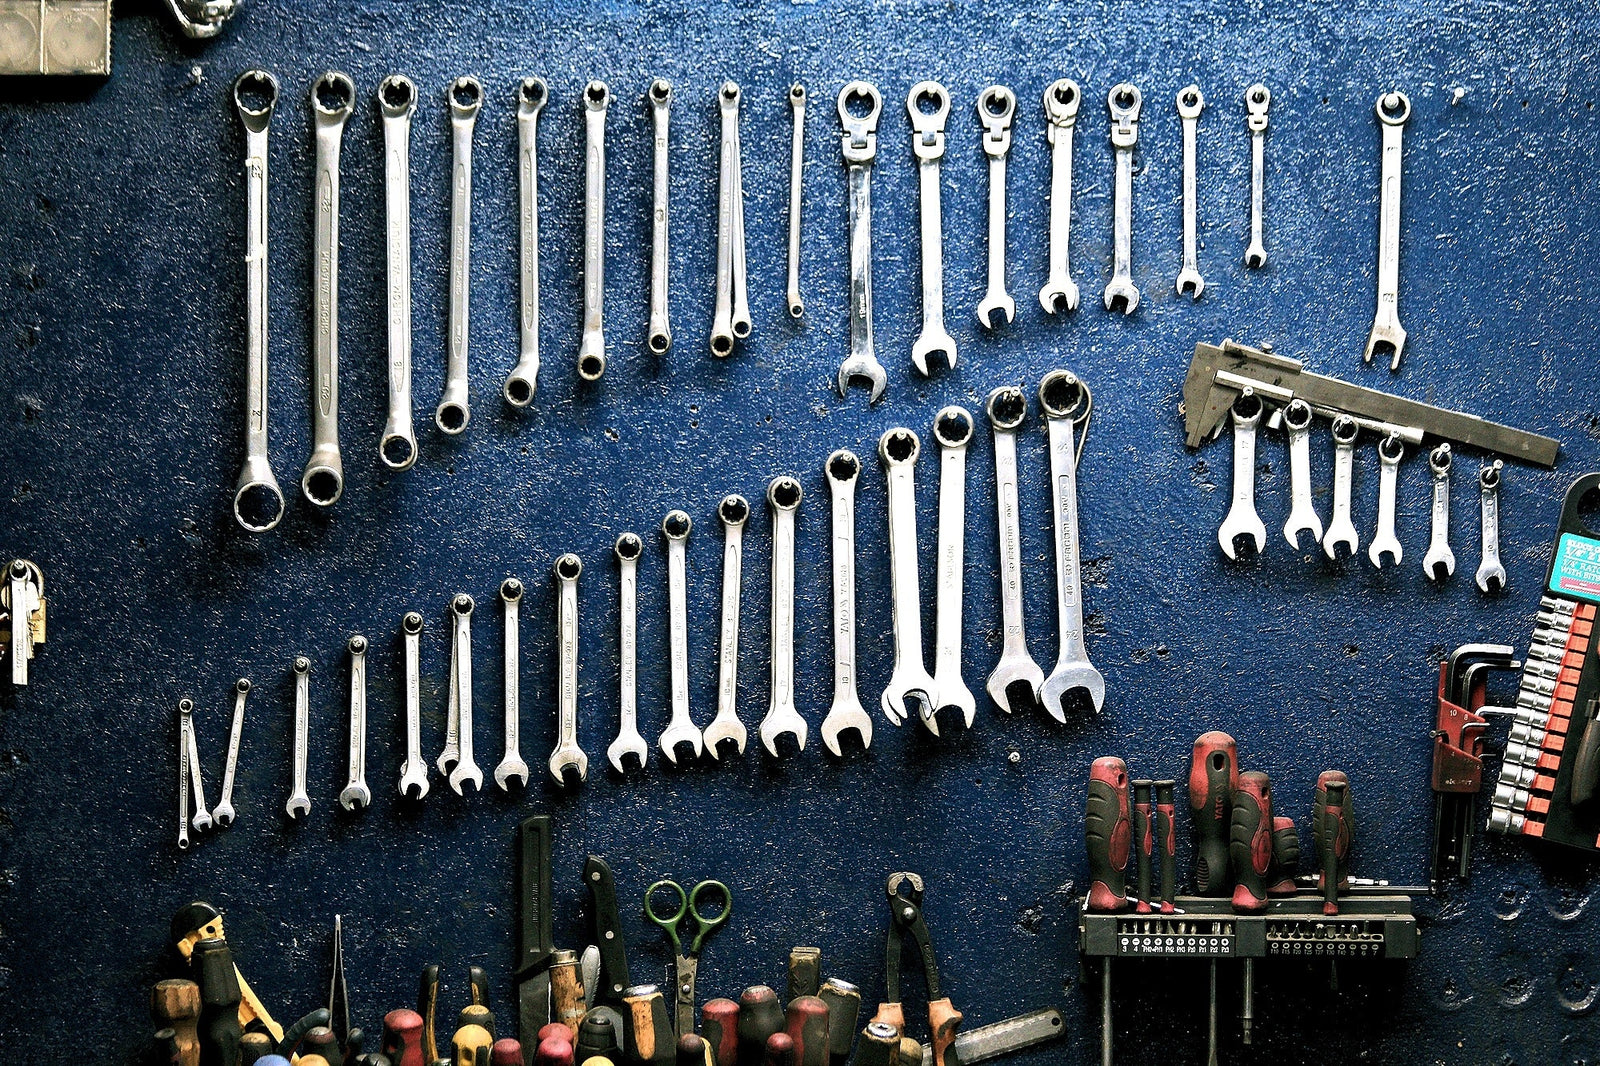 Auto Mechanic Tools List, Garage tools, automobile, Tools kit